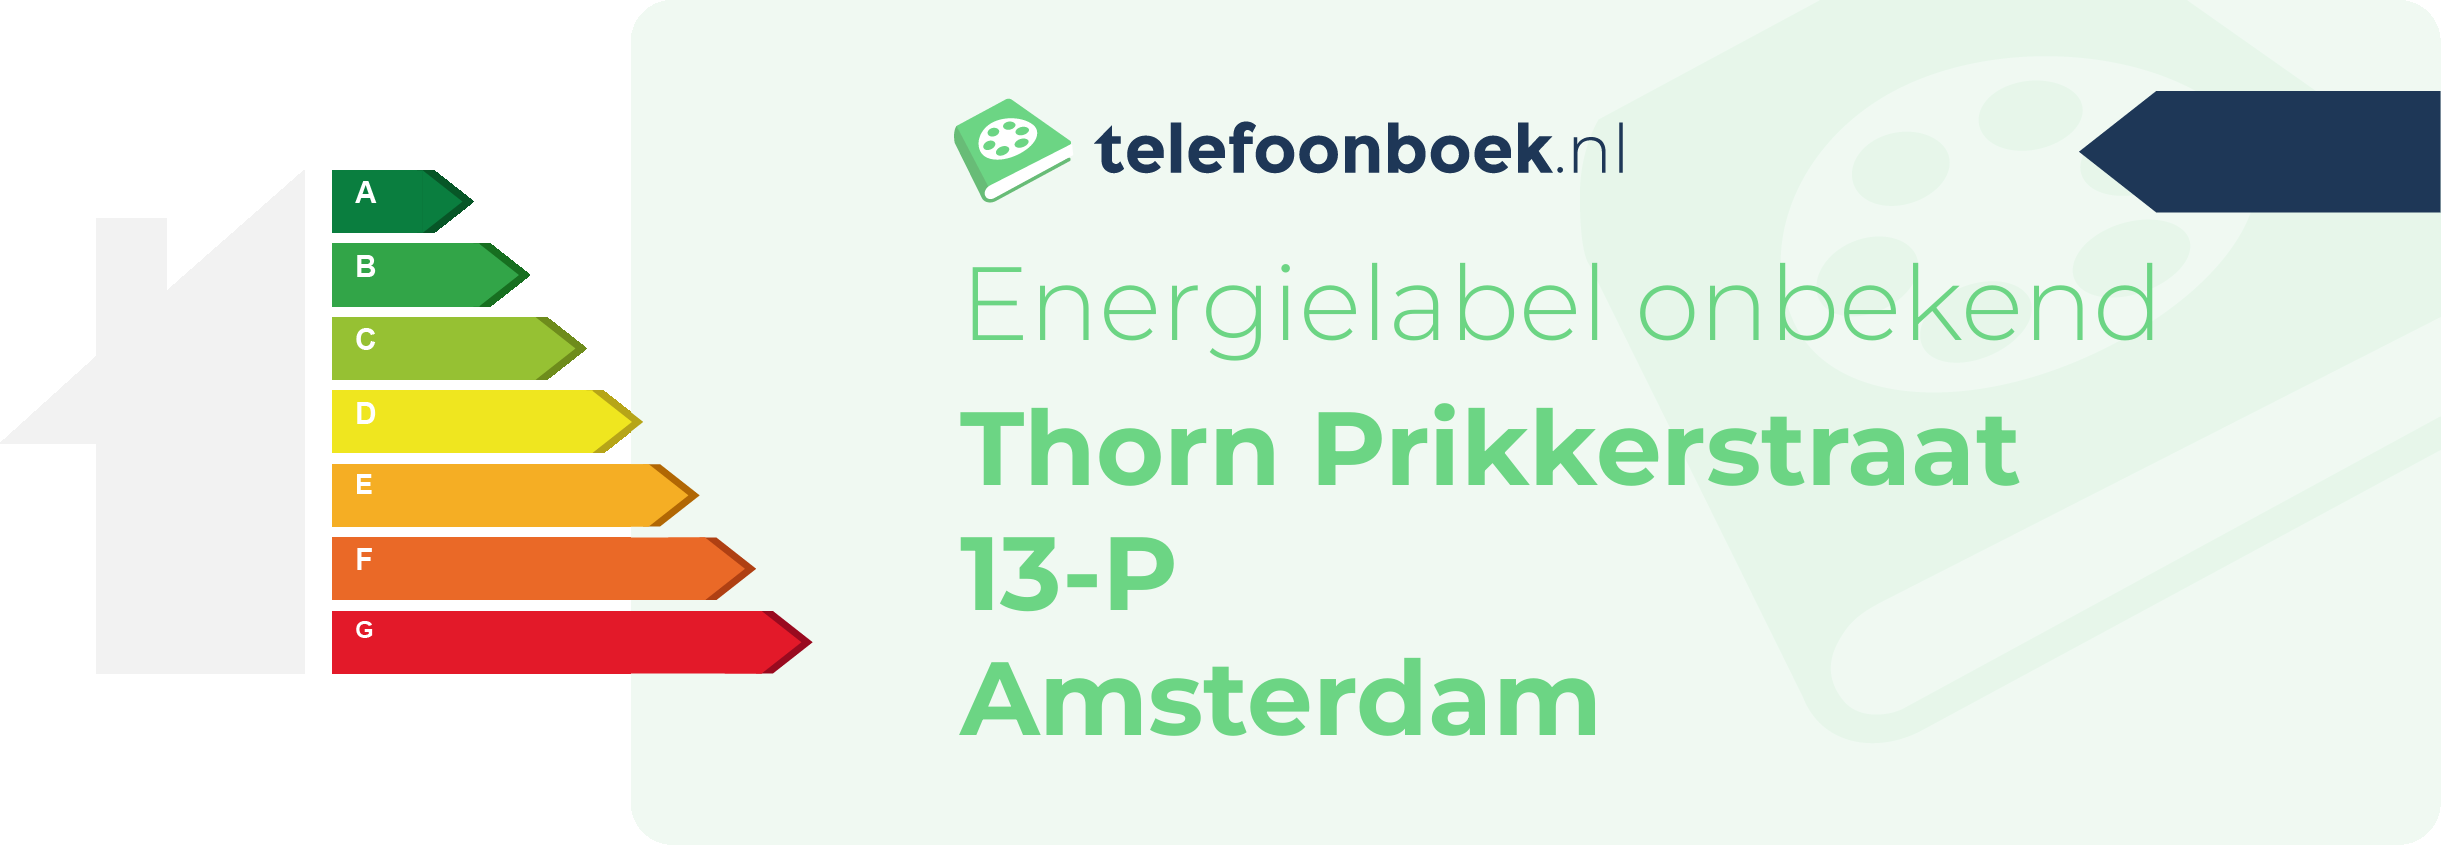 Energielabel Thorn Prikkerstraat 13-P Amsterdam